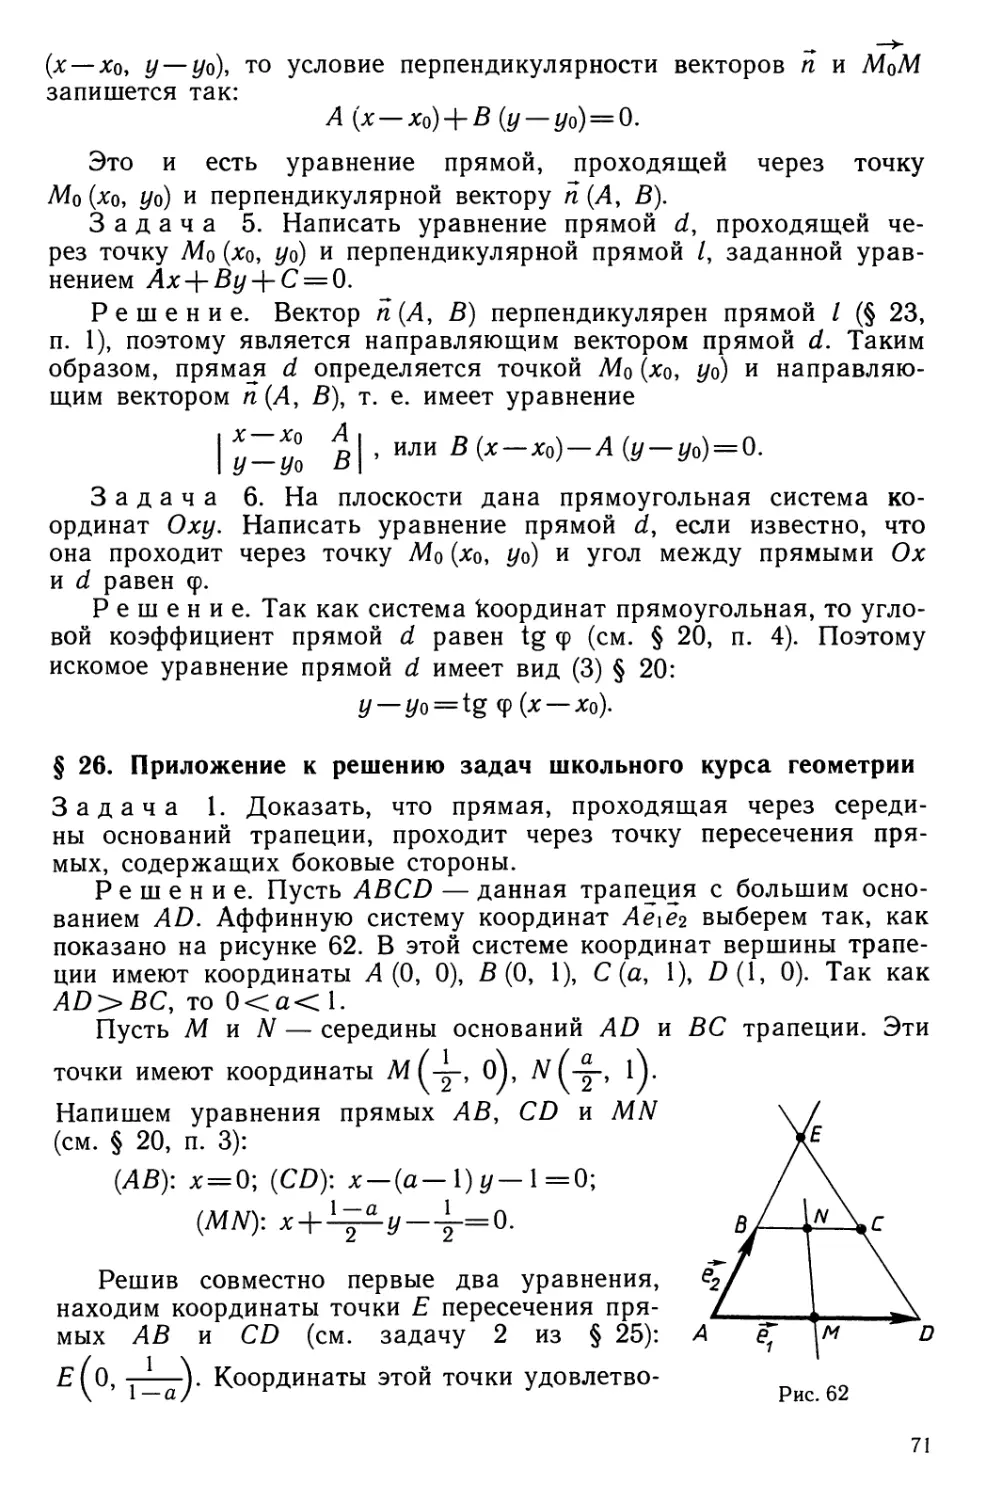 § 26. Приложение к решению задач школьного курса геометрии